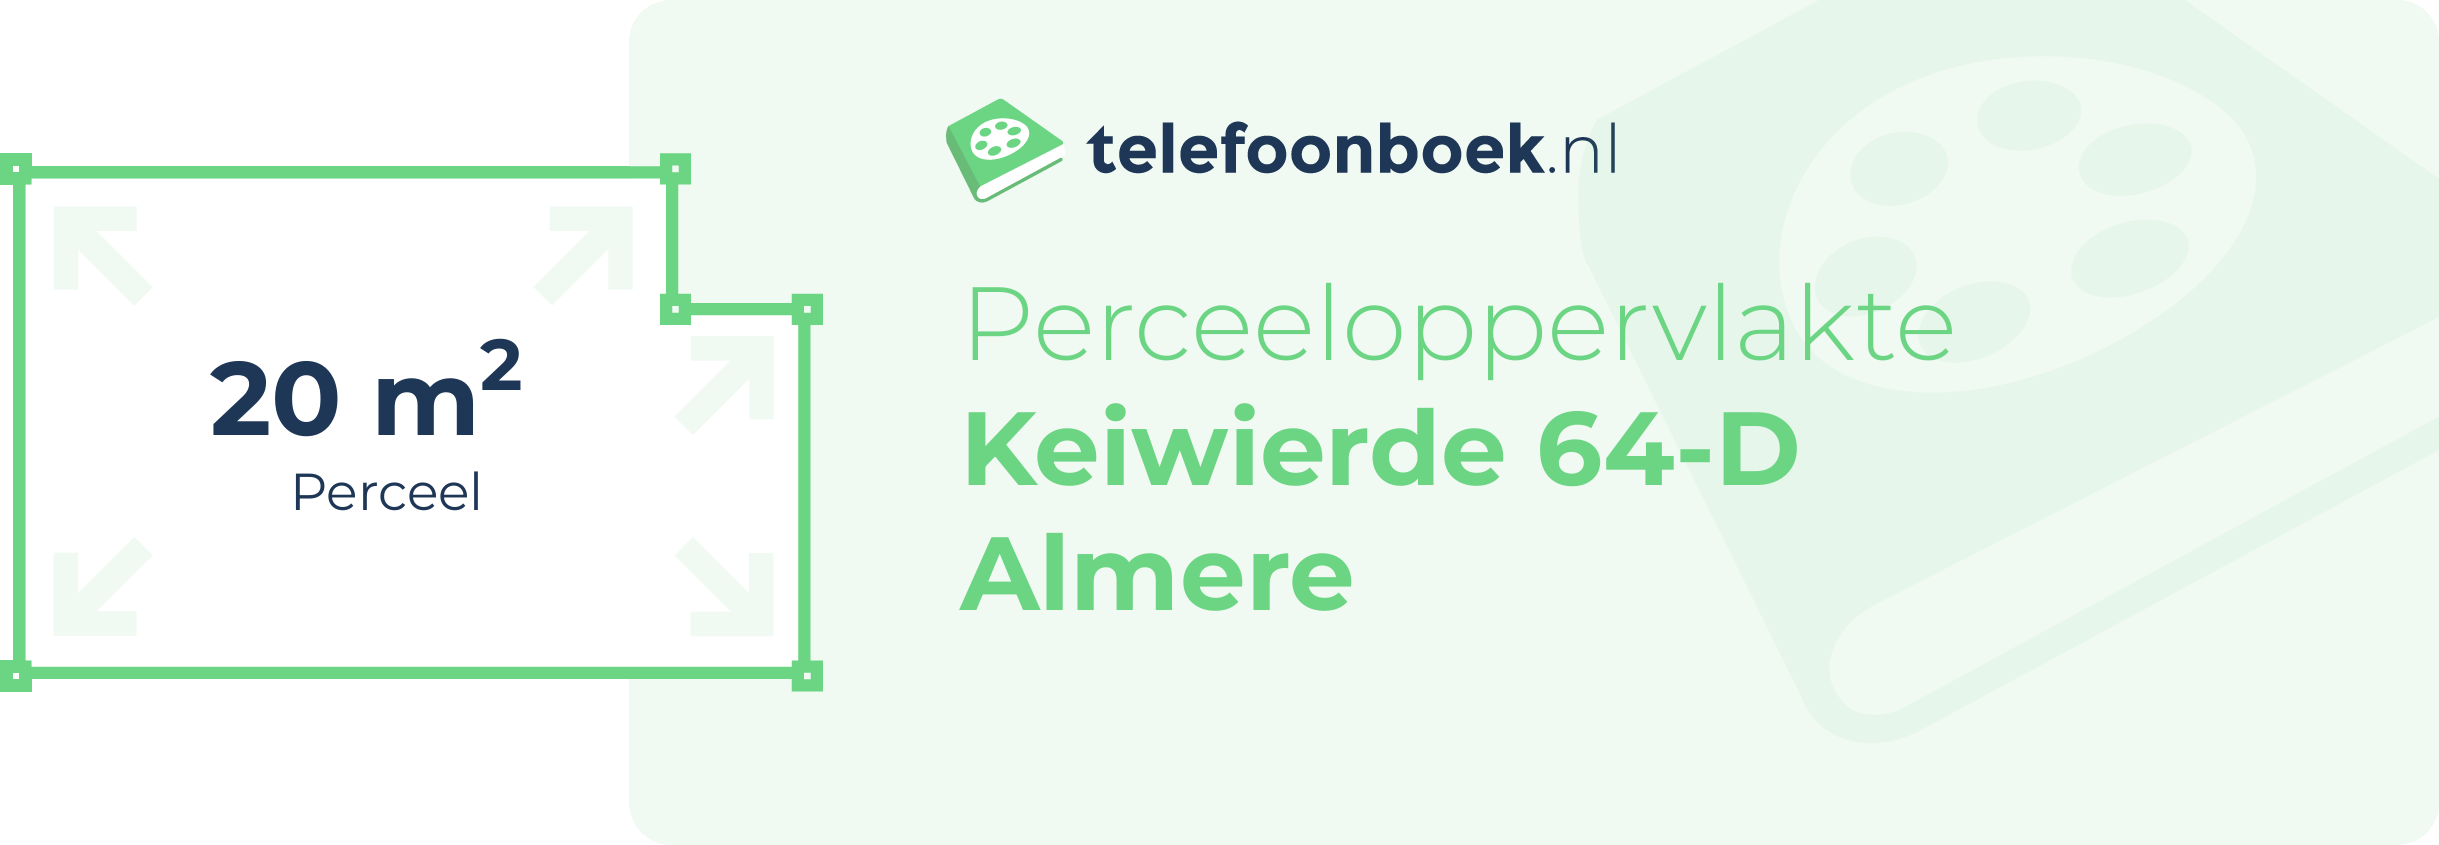 Perceeloppervlakte Keiwierde 64-D Almere